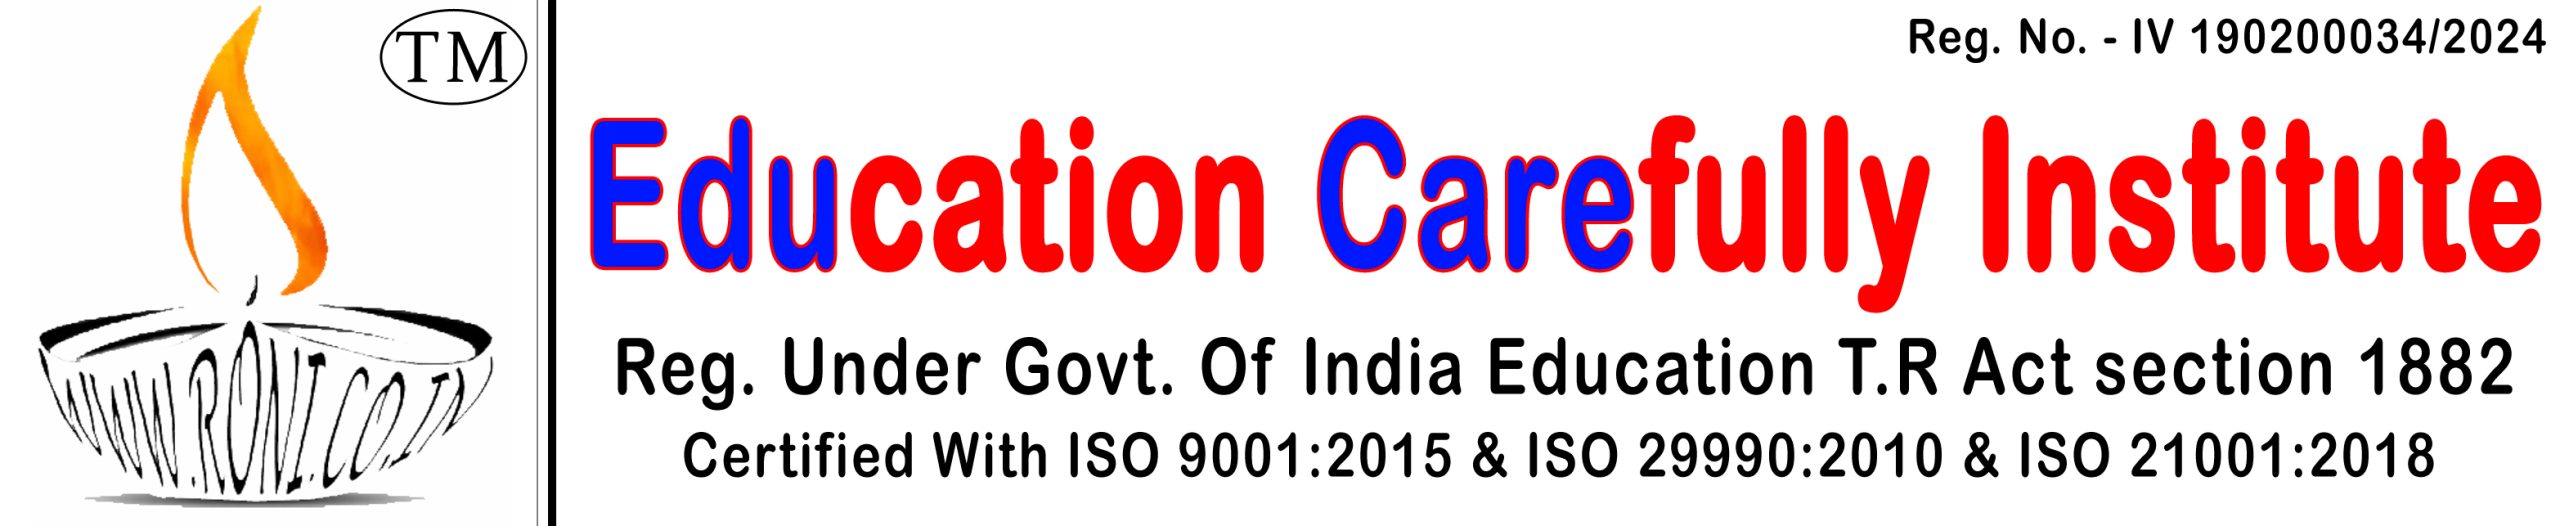 Education Carefully Institute